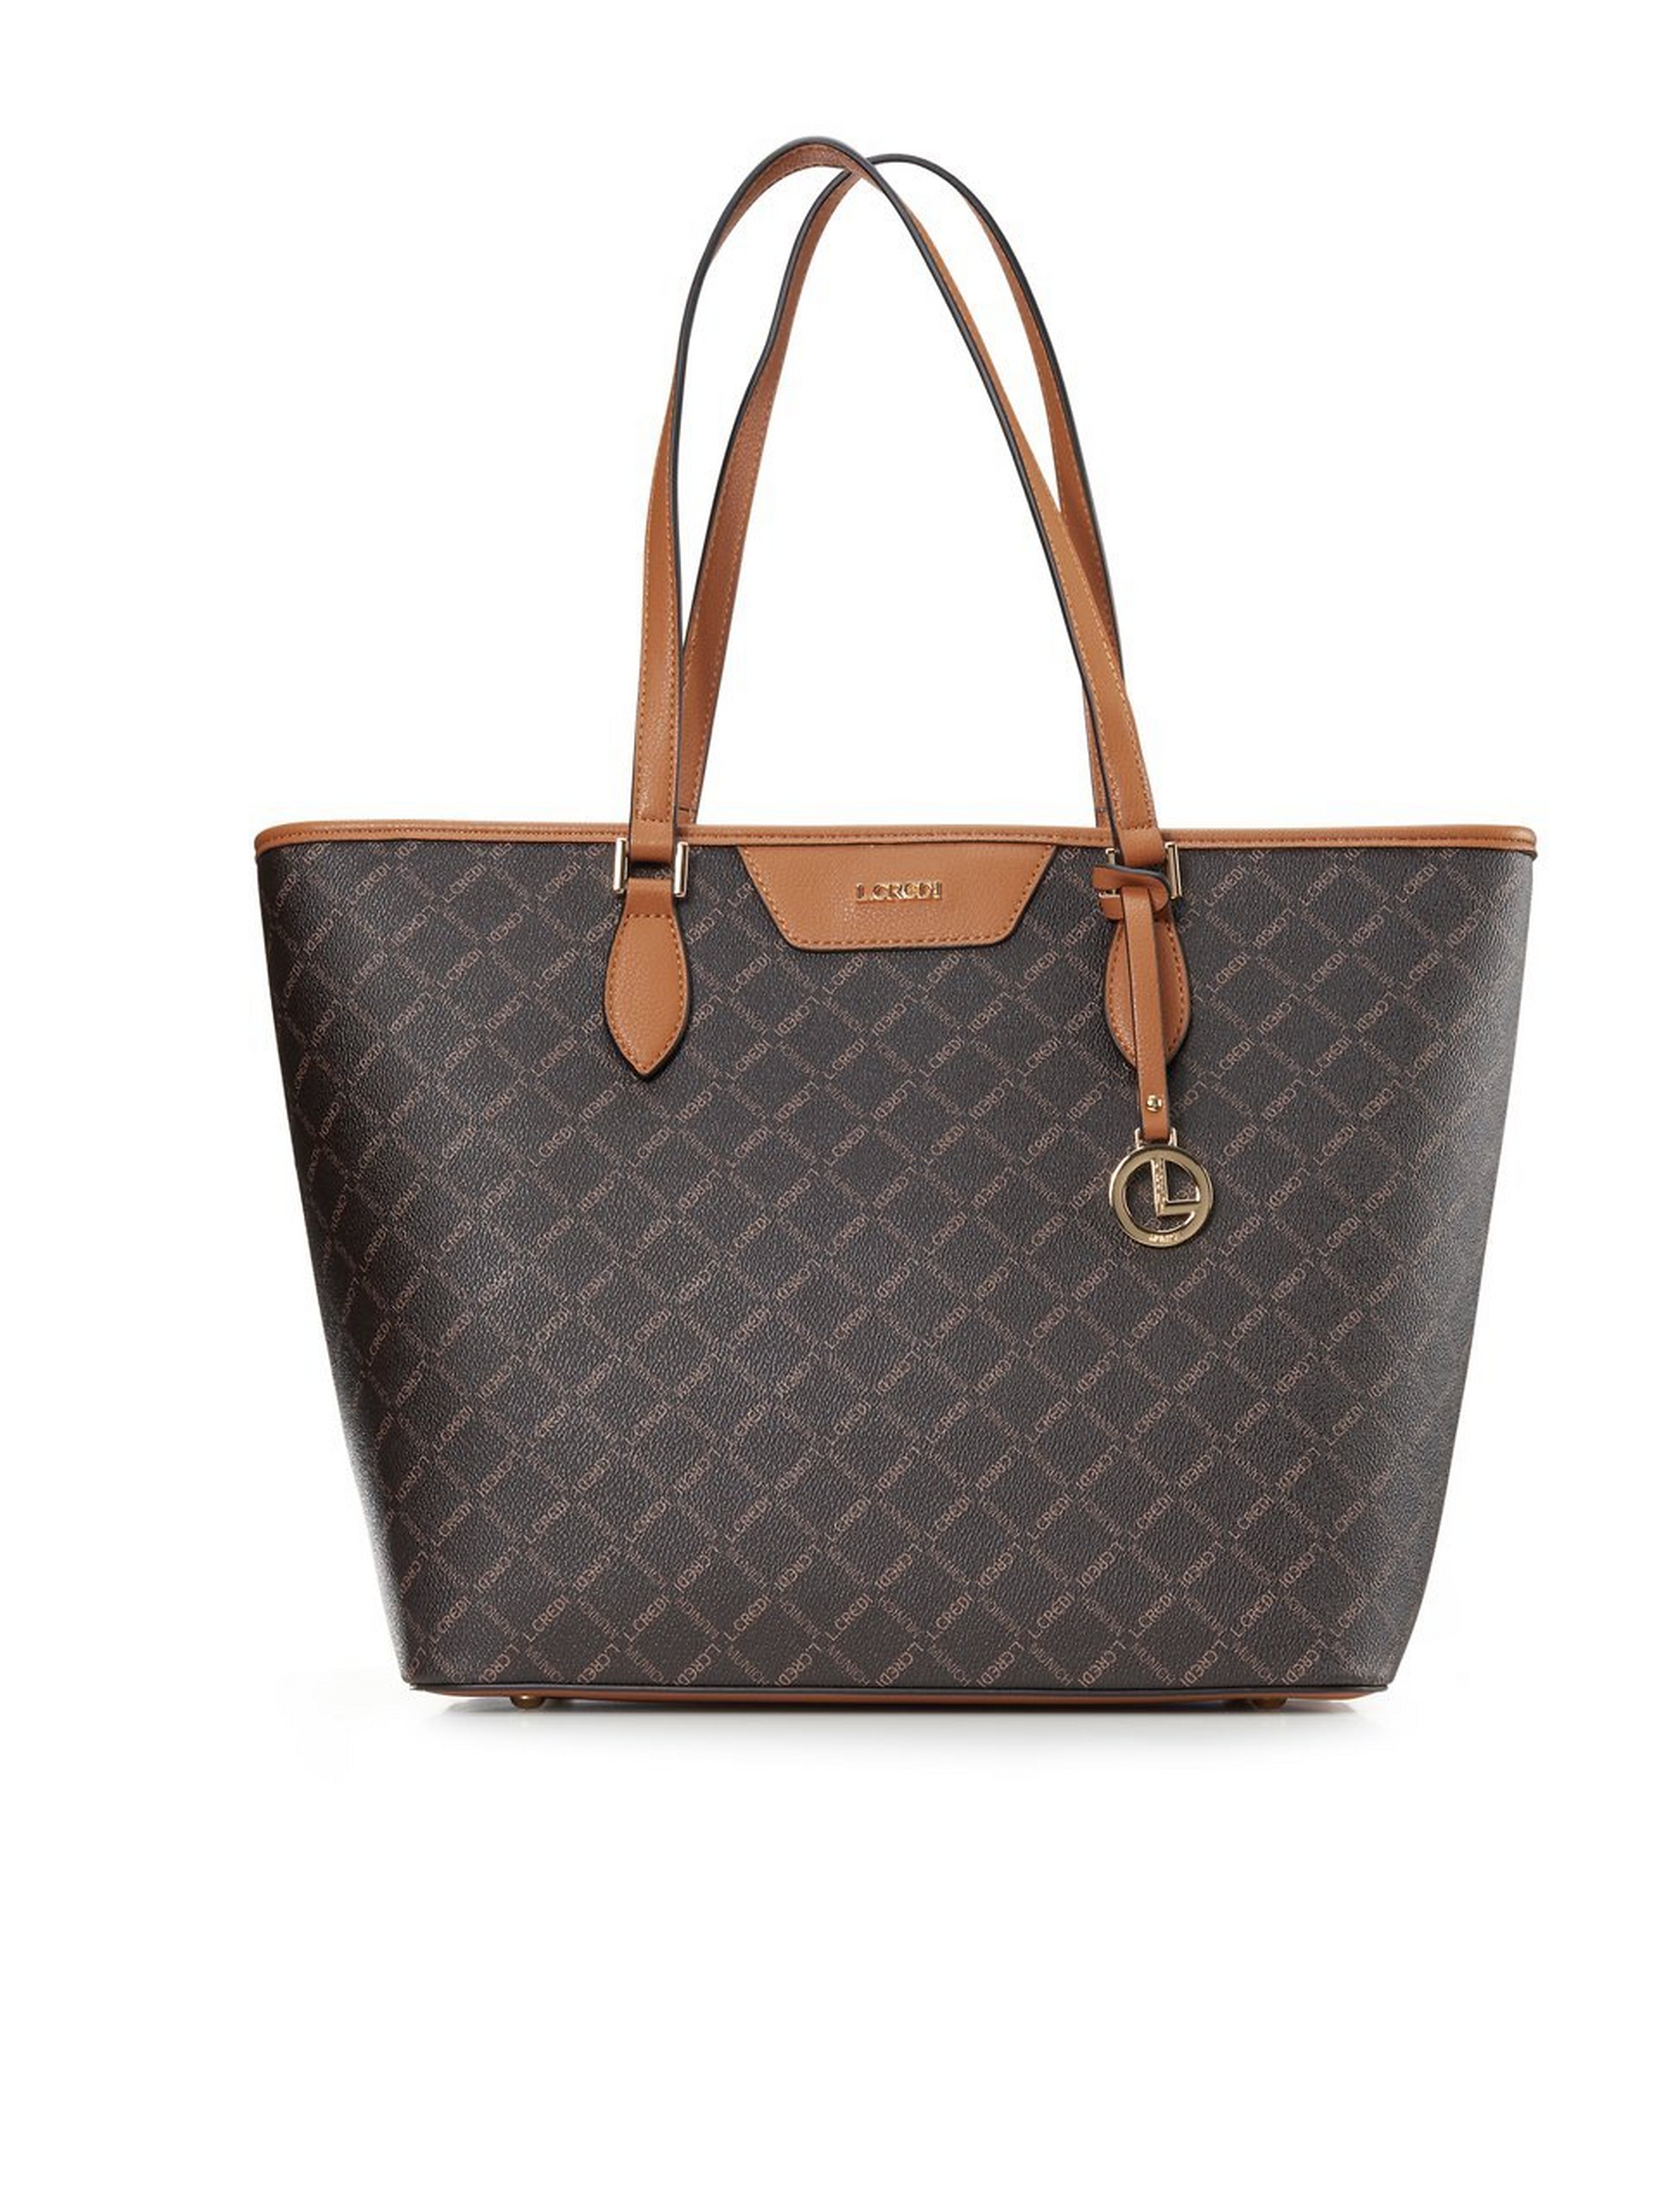 Shopper bag L. Credi brown